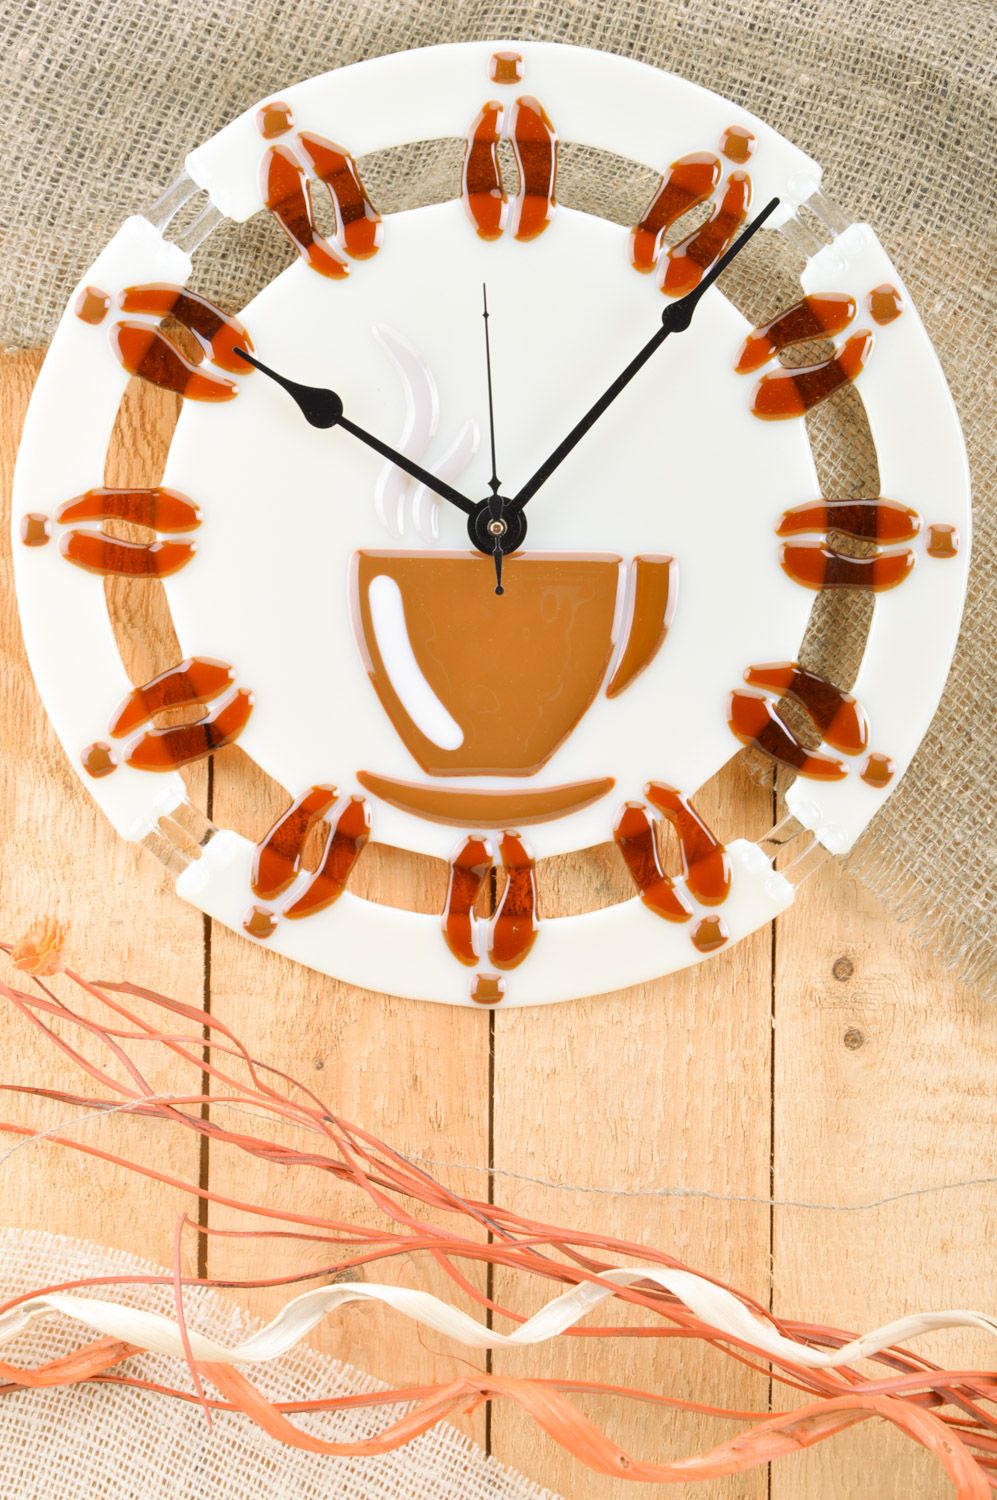 Круглые настенные часы из стекла ручной работы в технике фьюзинг для кухни Кофе фото 1